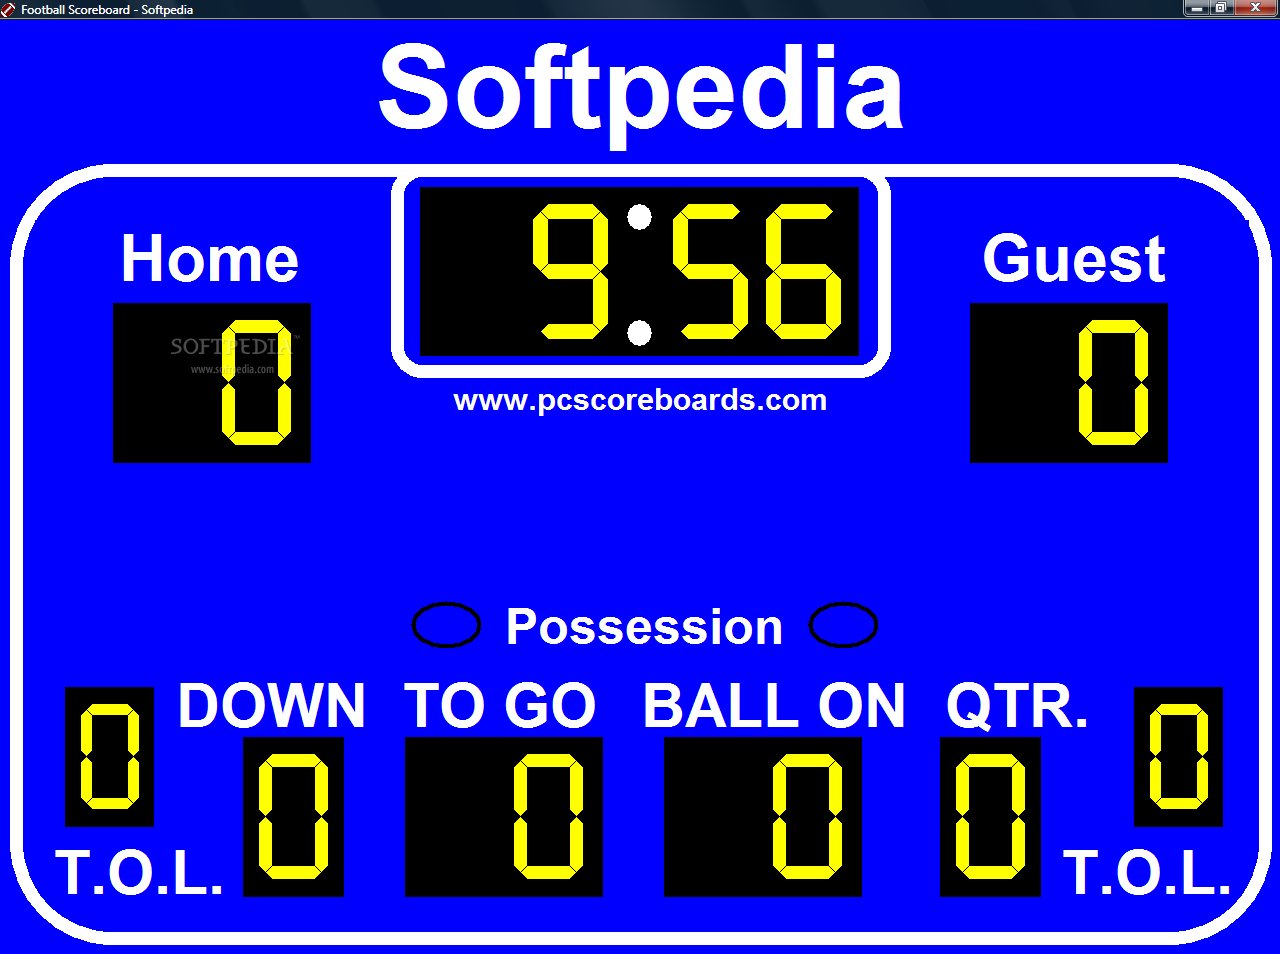 Football+Scoreboard+1+jpg